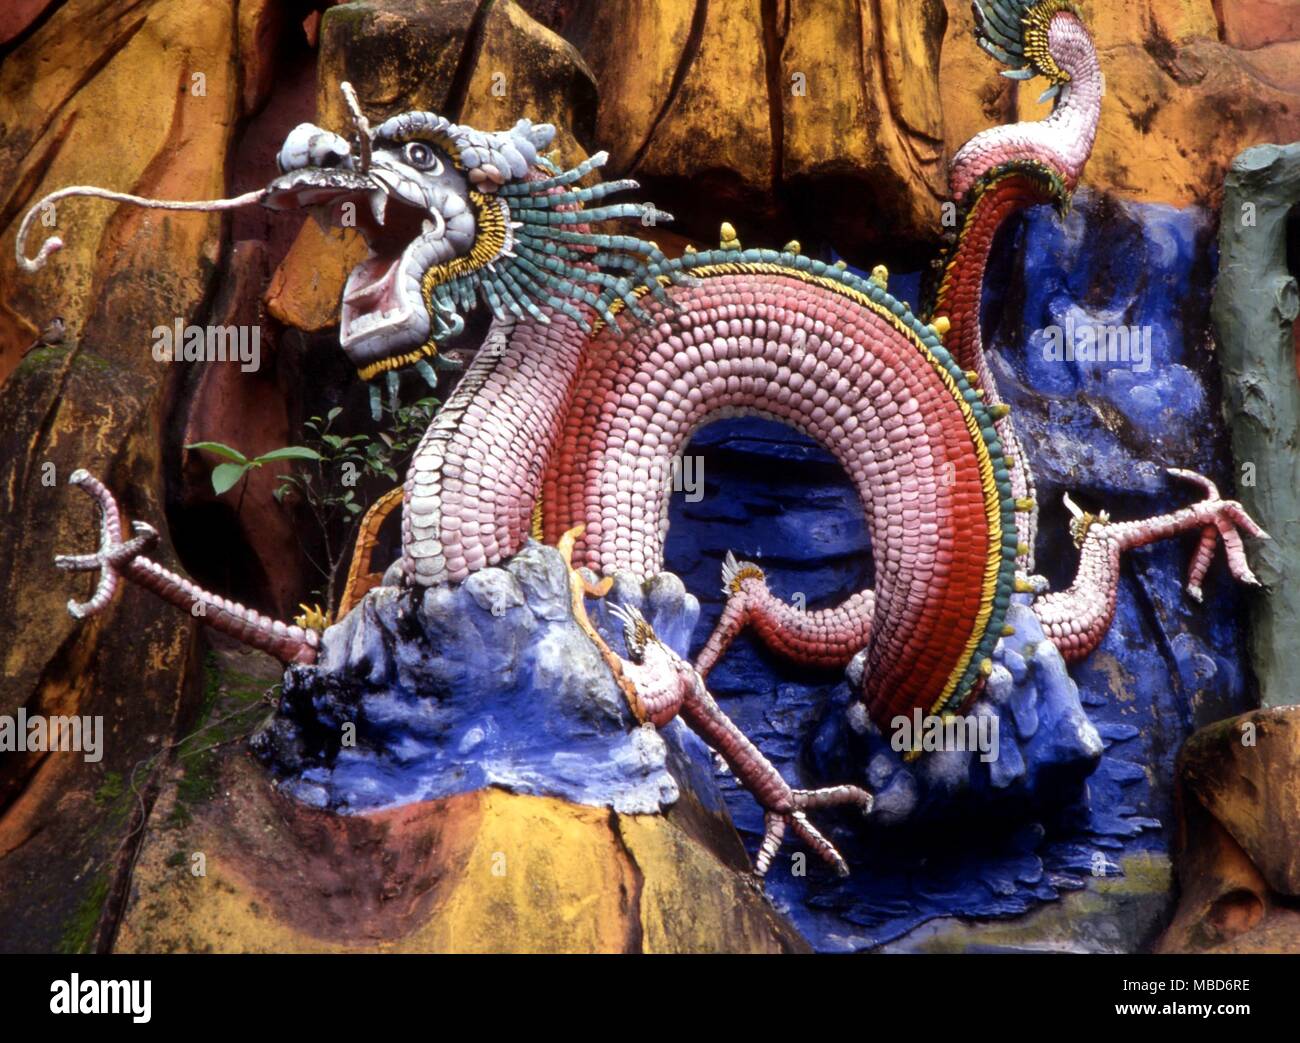 Drago - ceramica enorme dragone cinese impostata in corrispondenza di una delle pareti di Haw Par Villa Park di Hong Kong Foto Stock